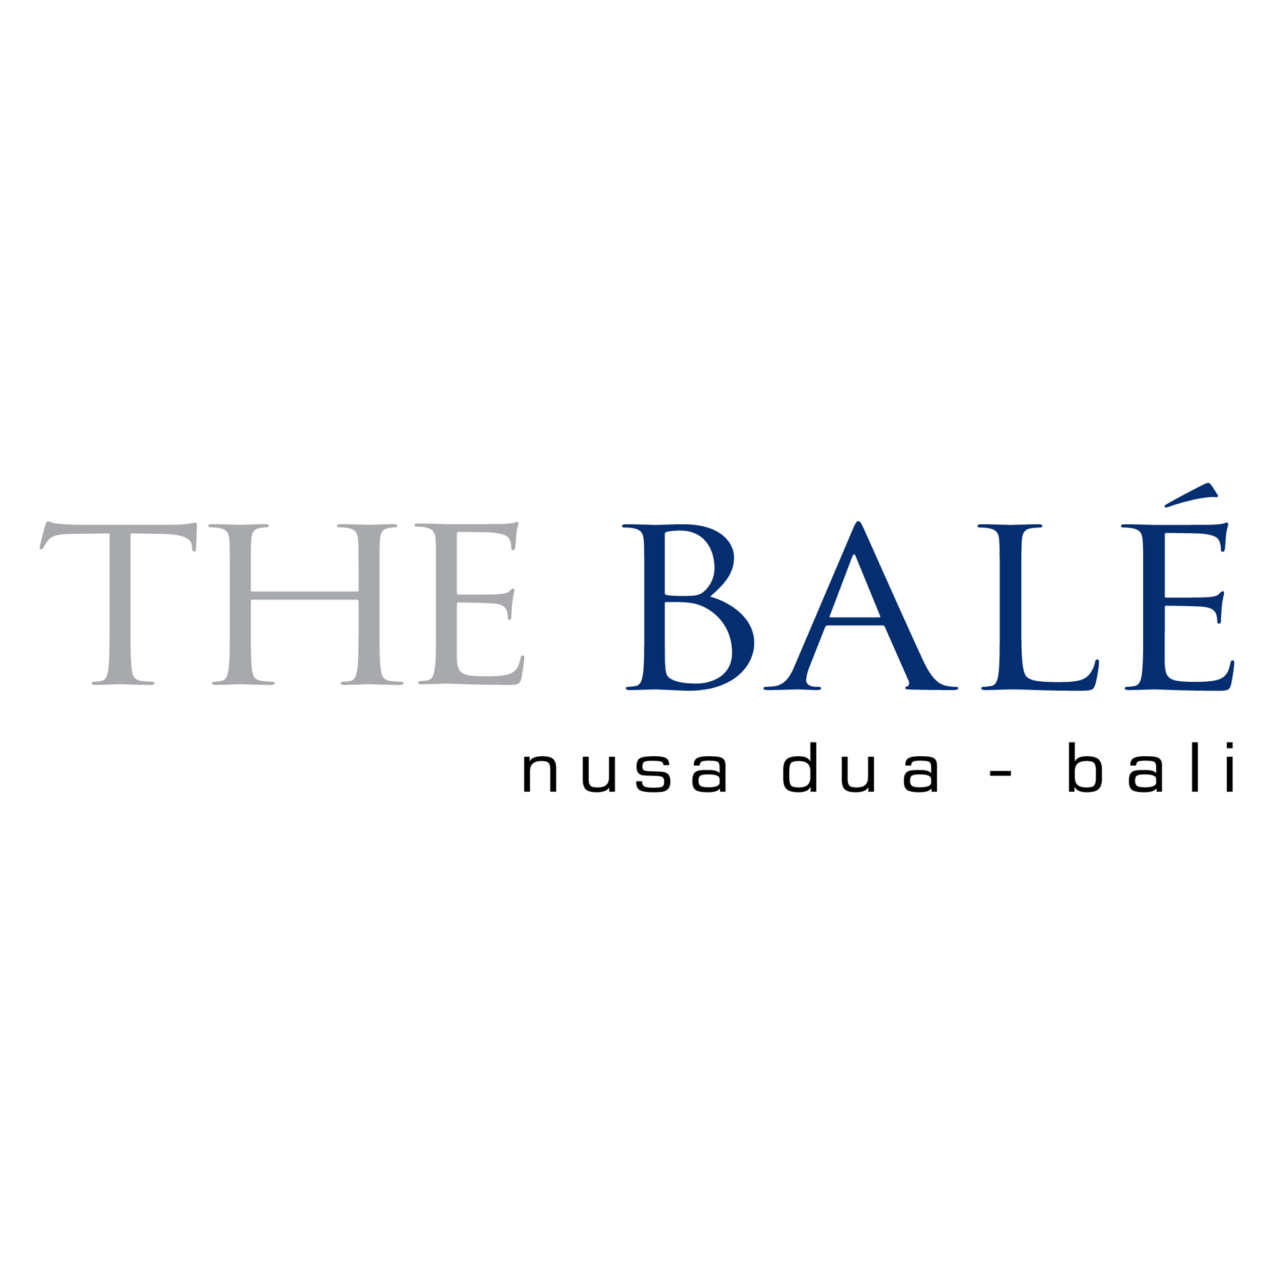 Bale-logo-1280x1280.png